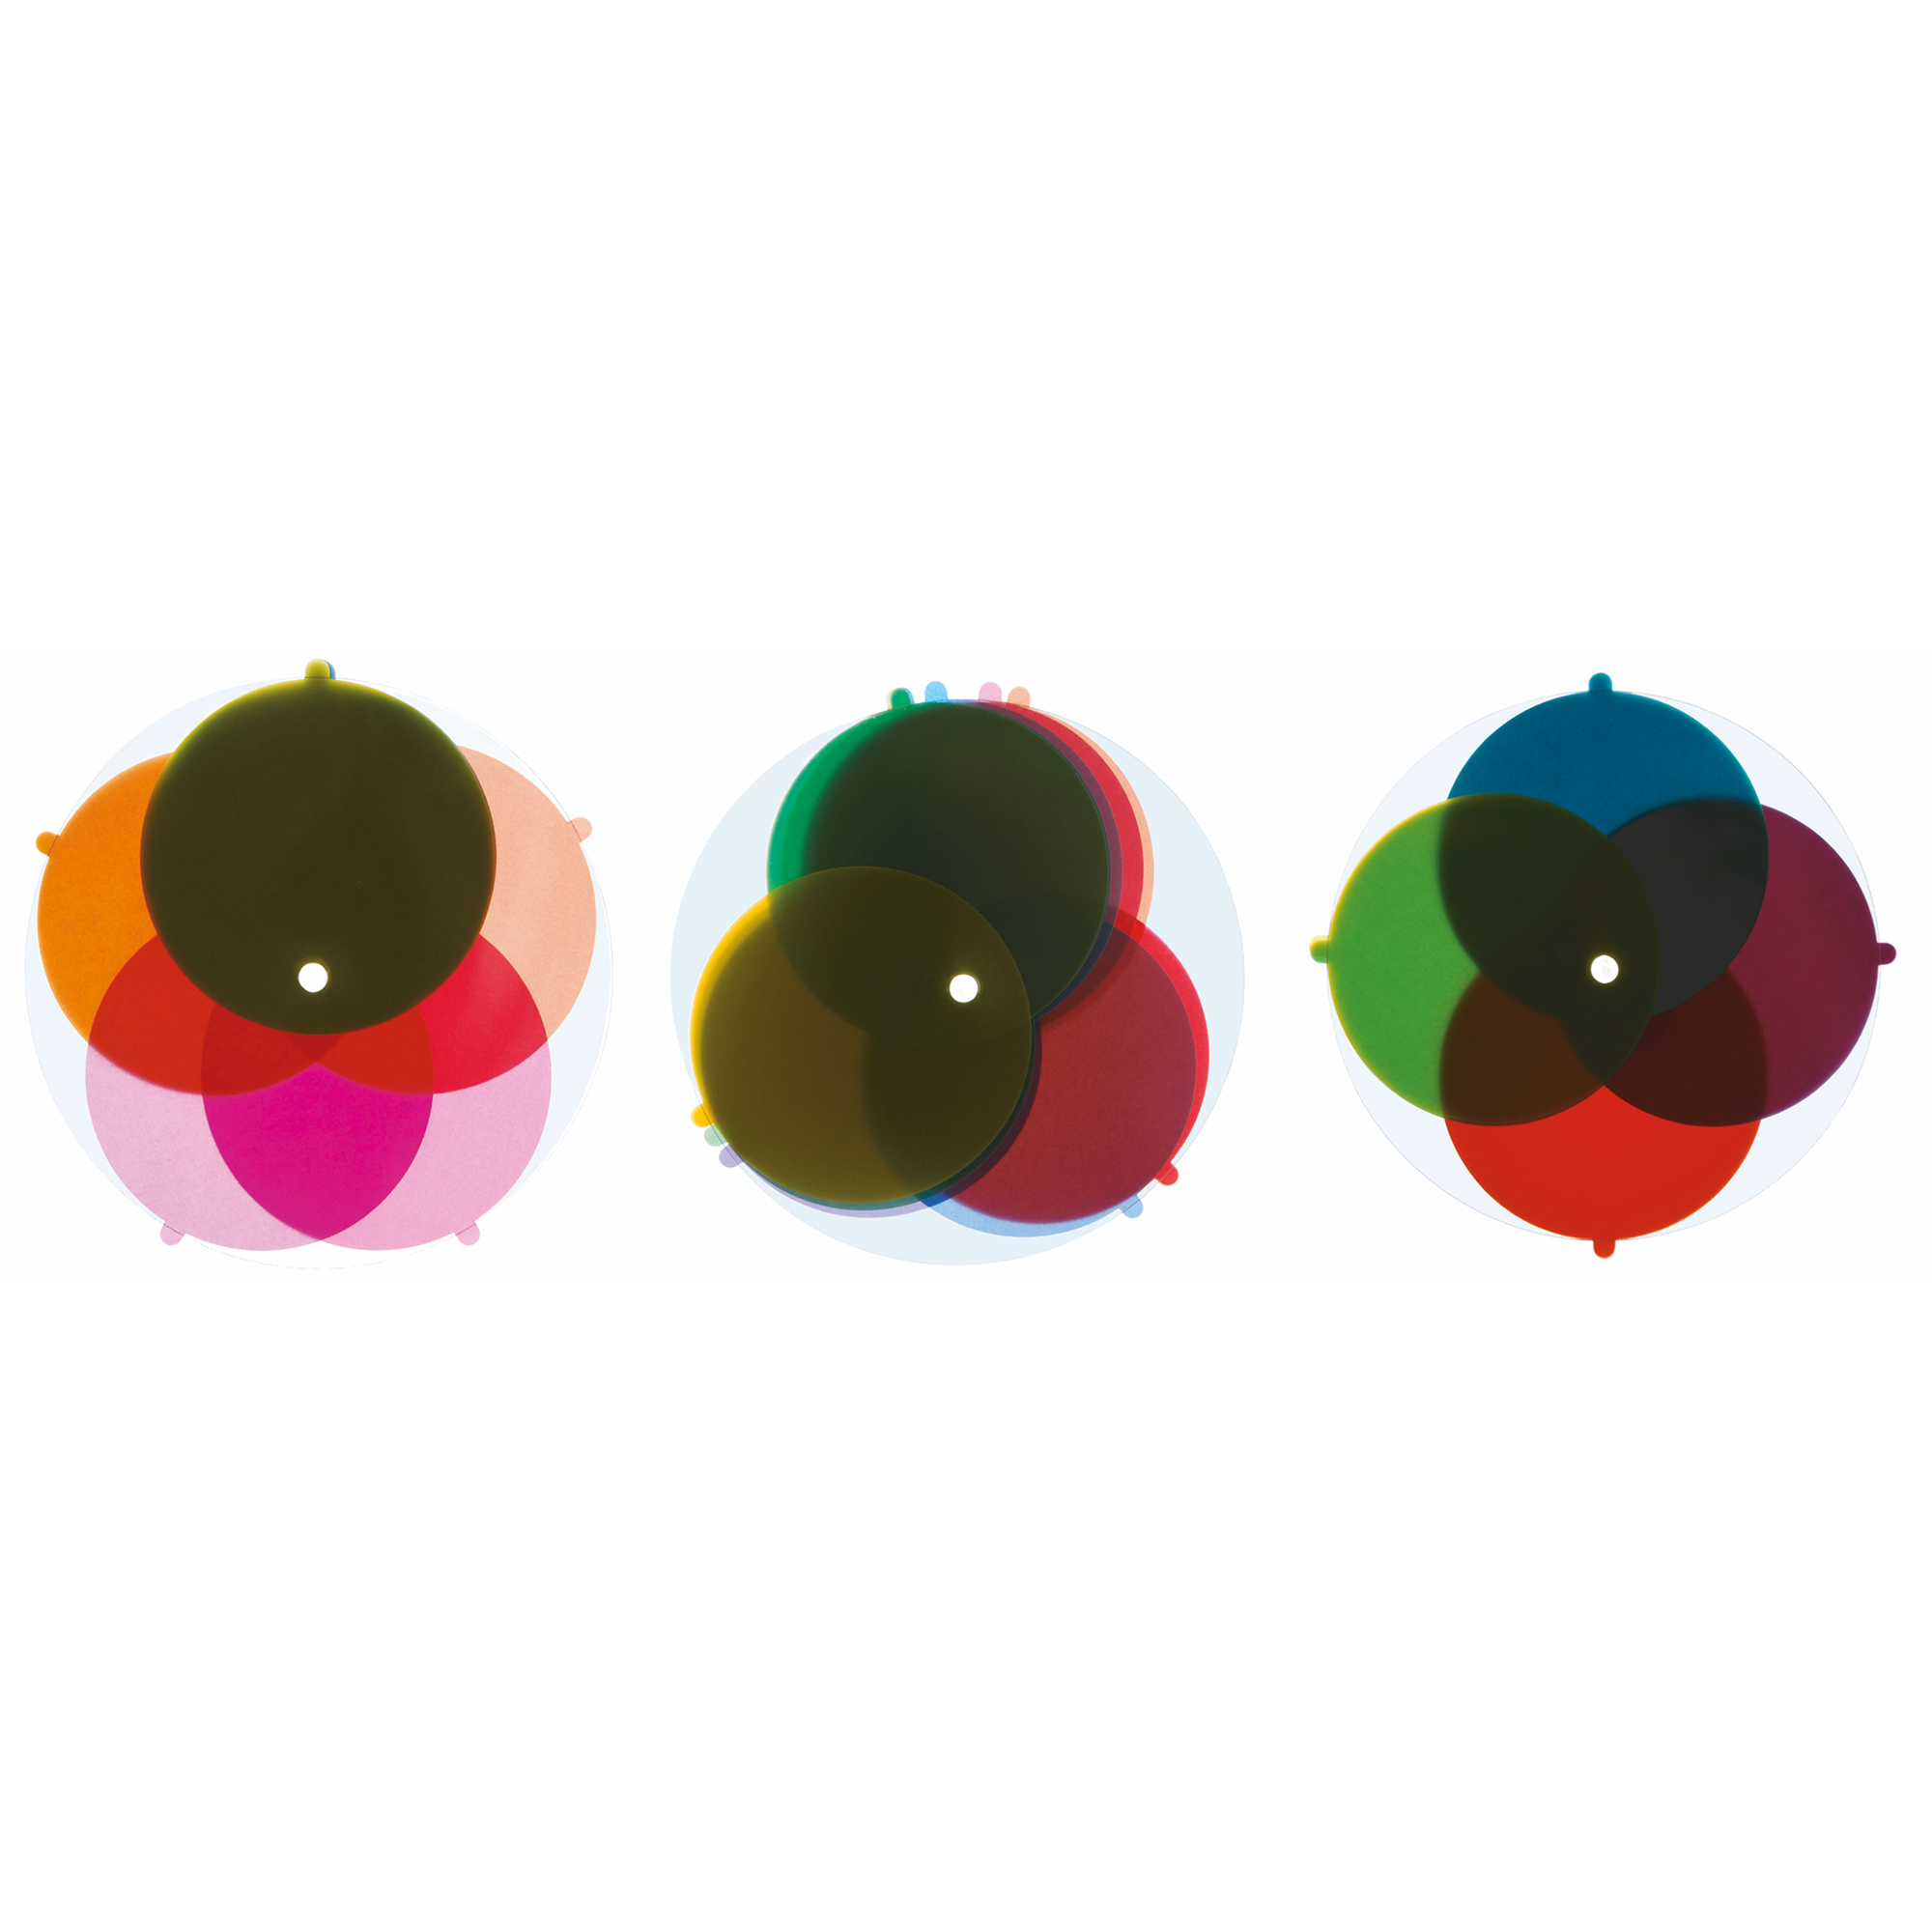 Fensterfarbenspiel mit 12 Farben - drei Varianten